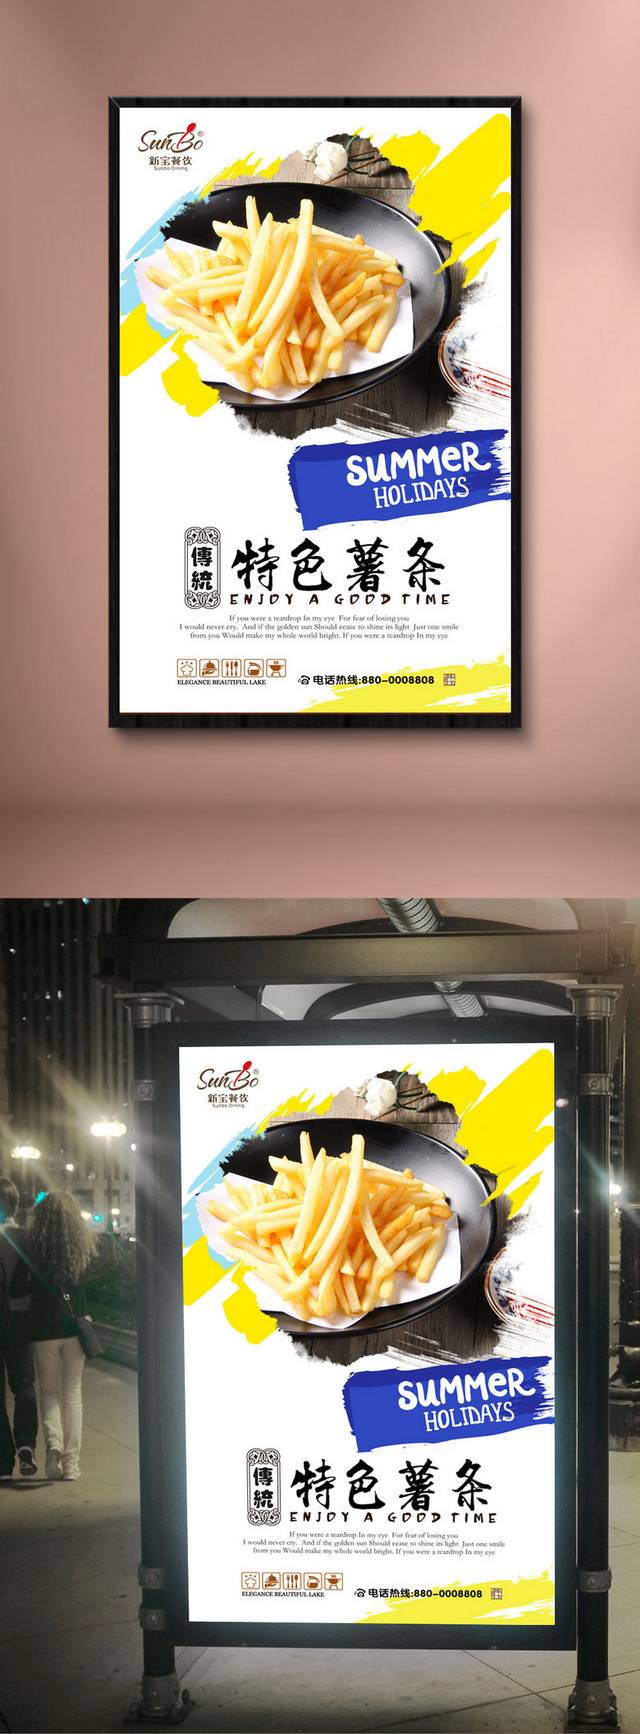 薯条零食广告宣传海报设计